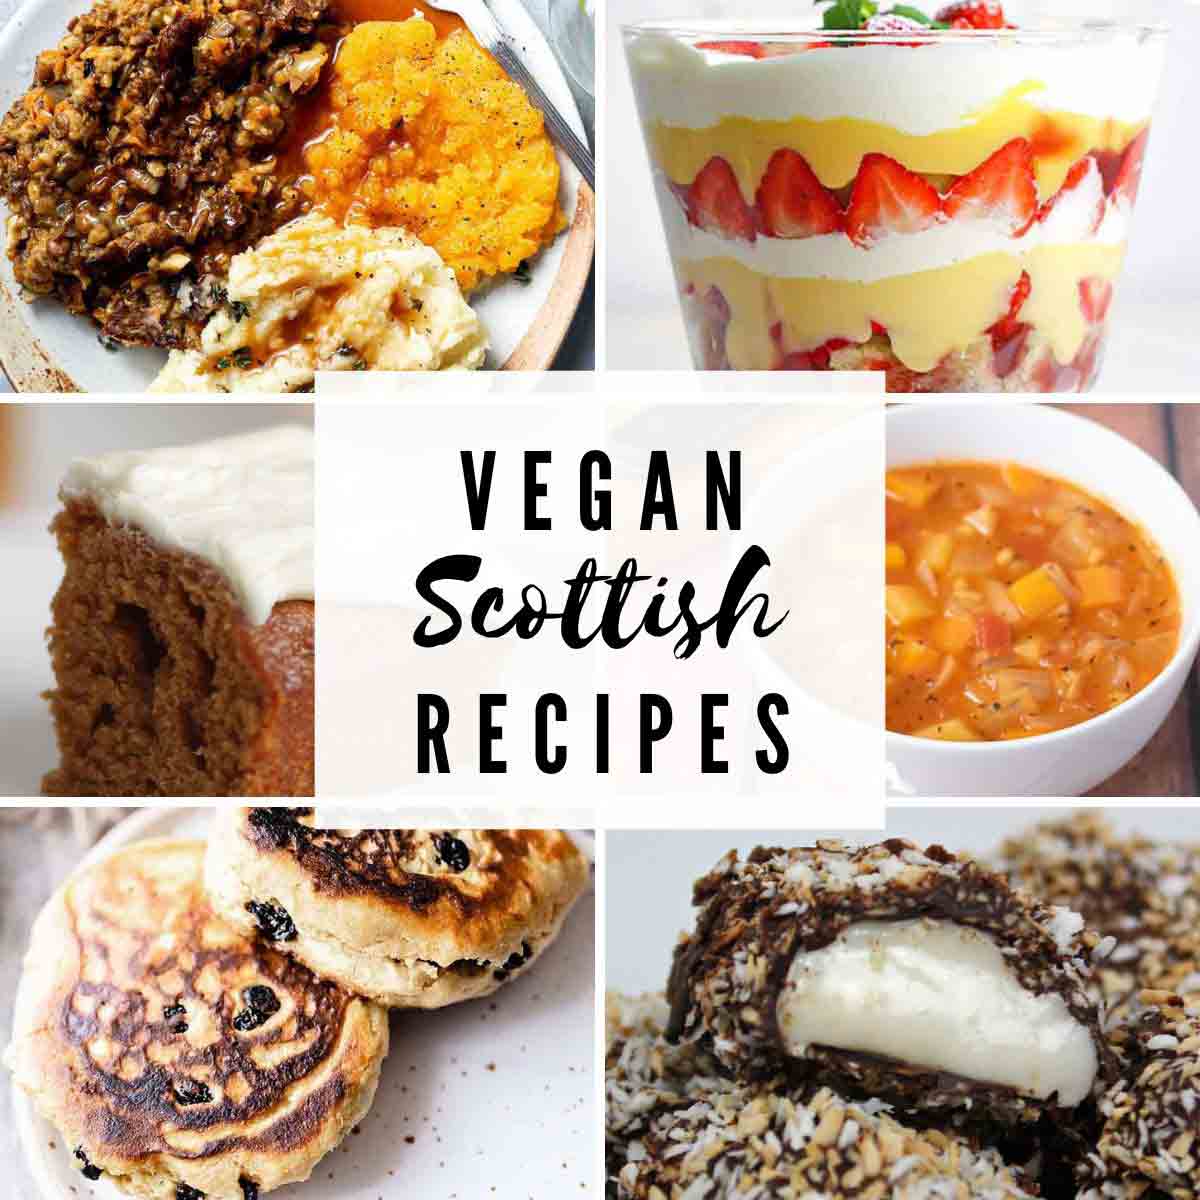 Vegan Scottish Recipes Images